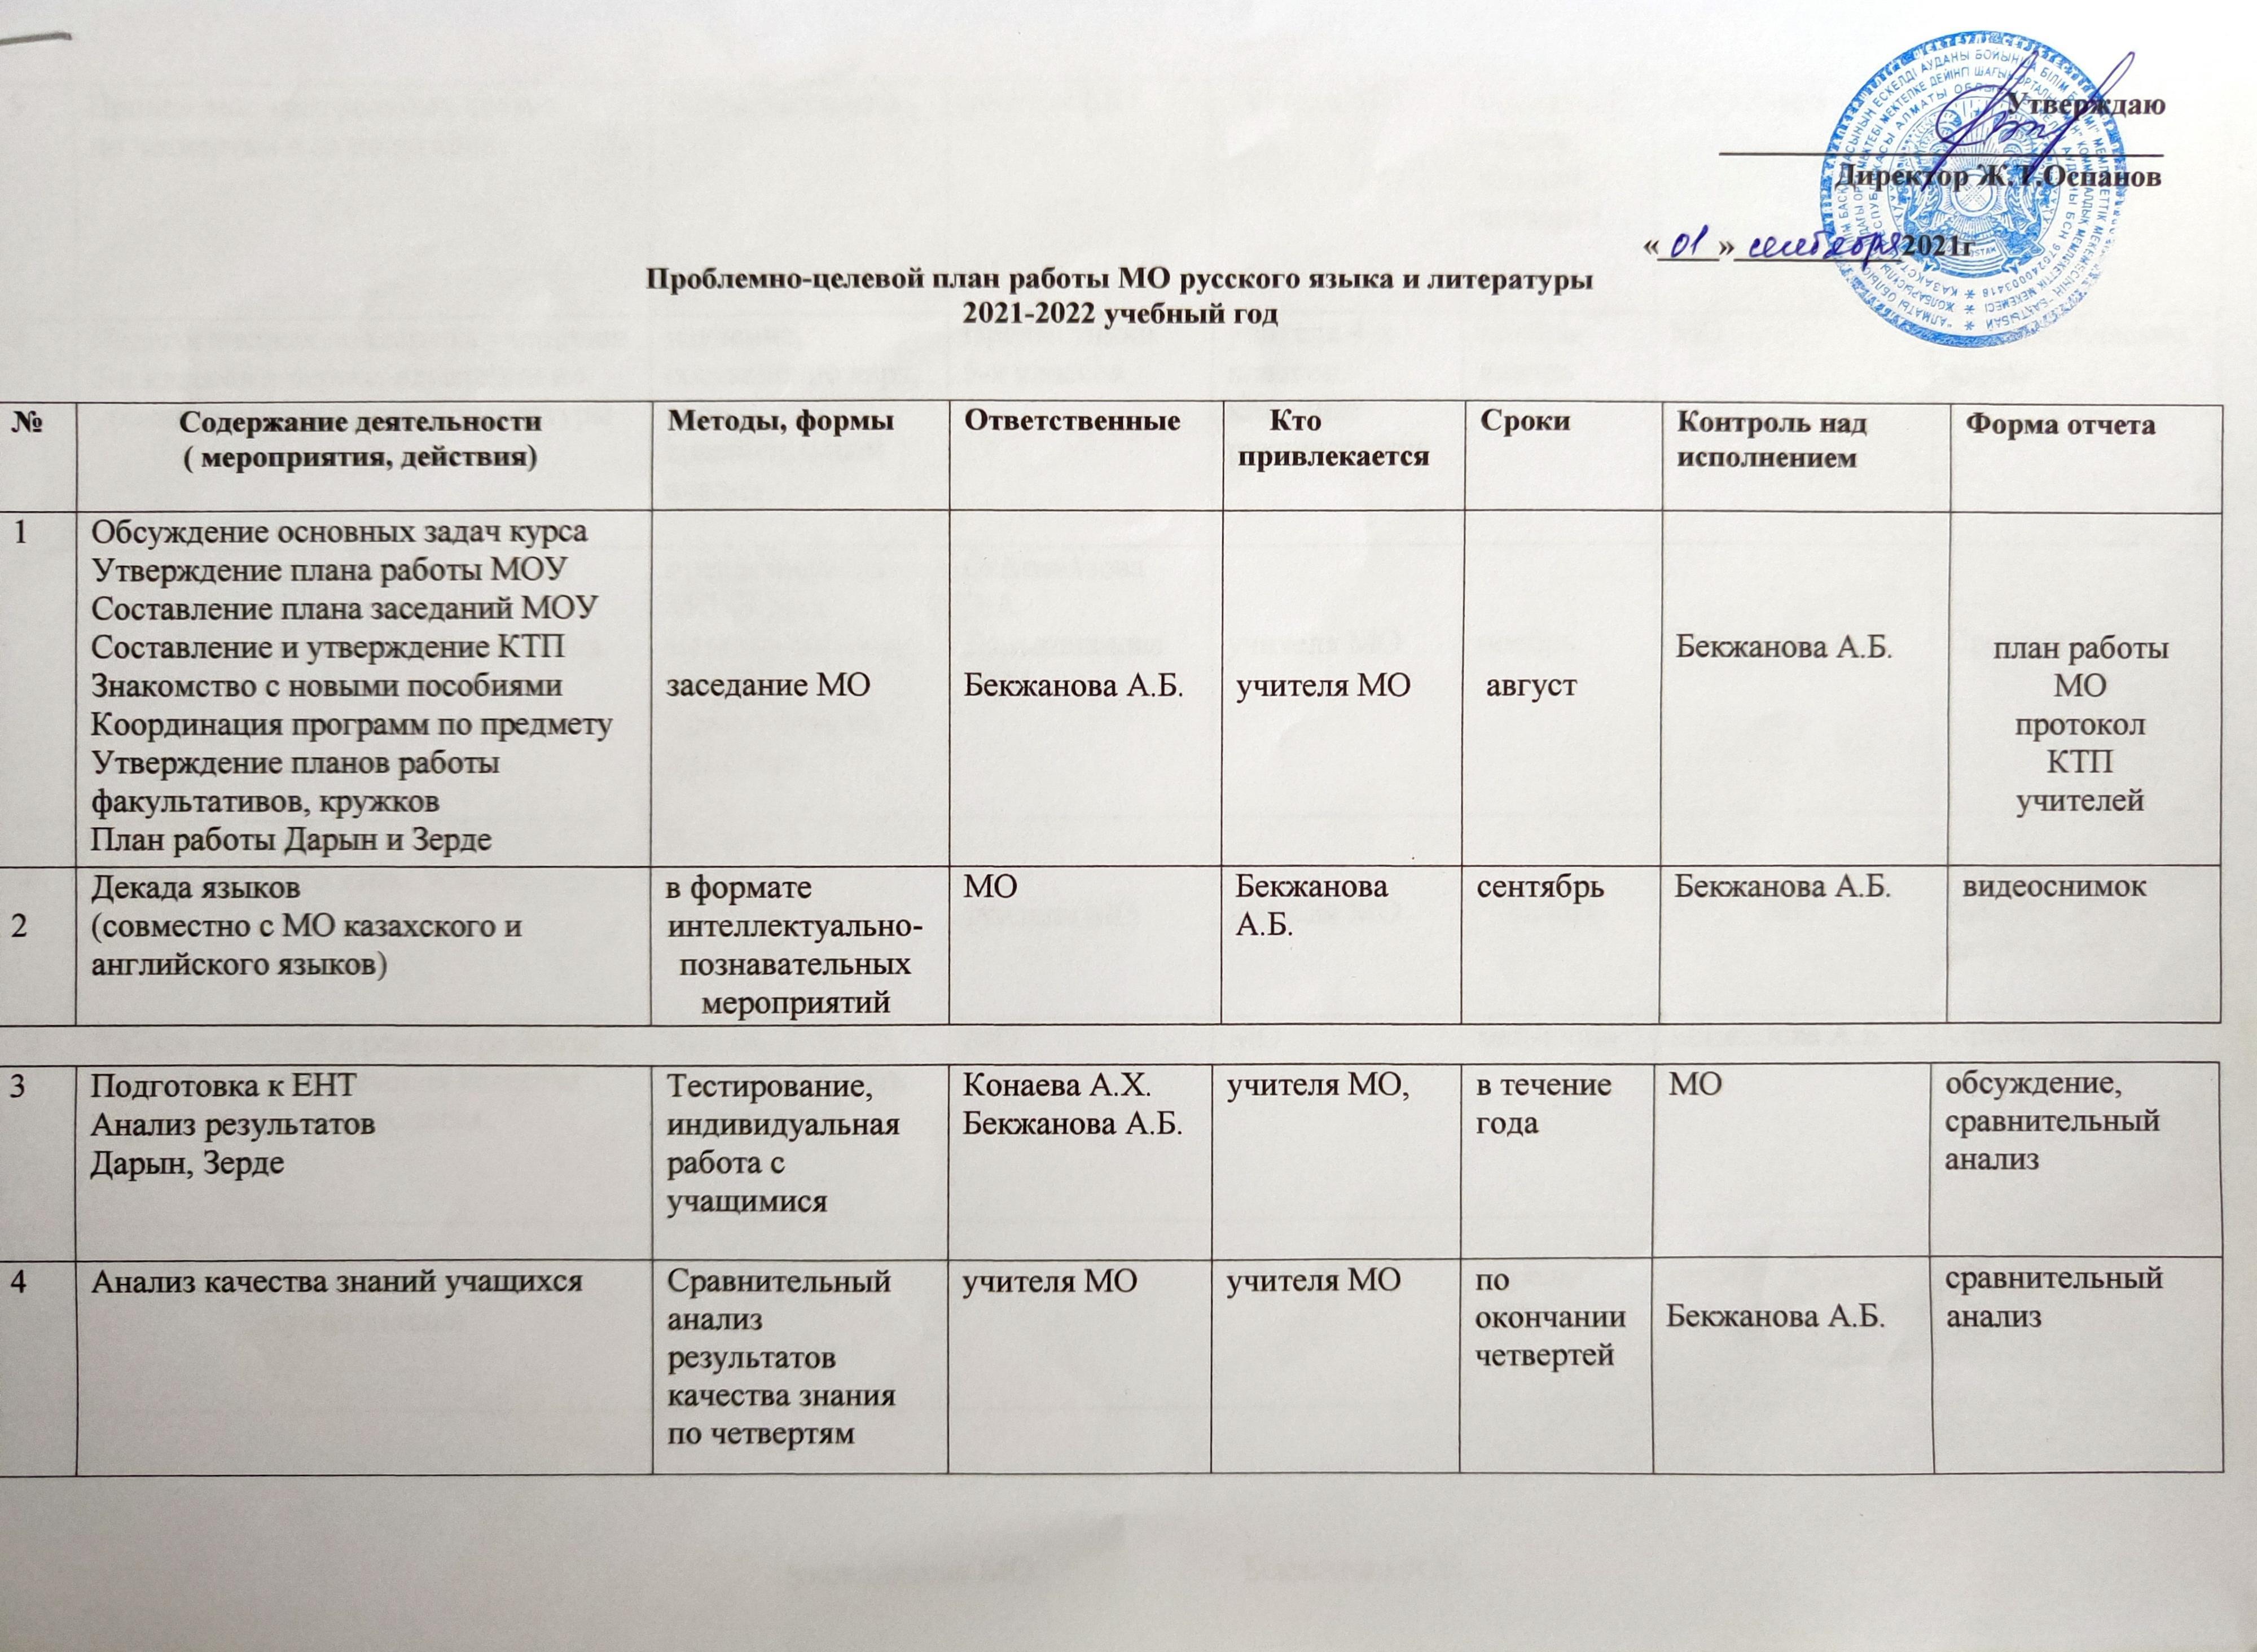 Проблема - целевой план работы МО русского языка и литературы 2021-2022 учебный год